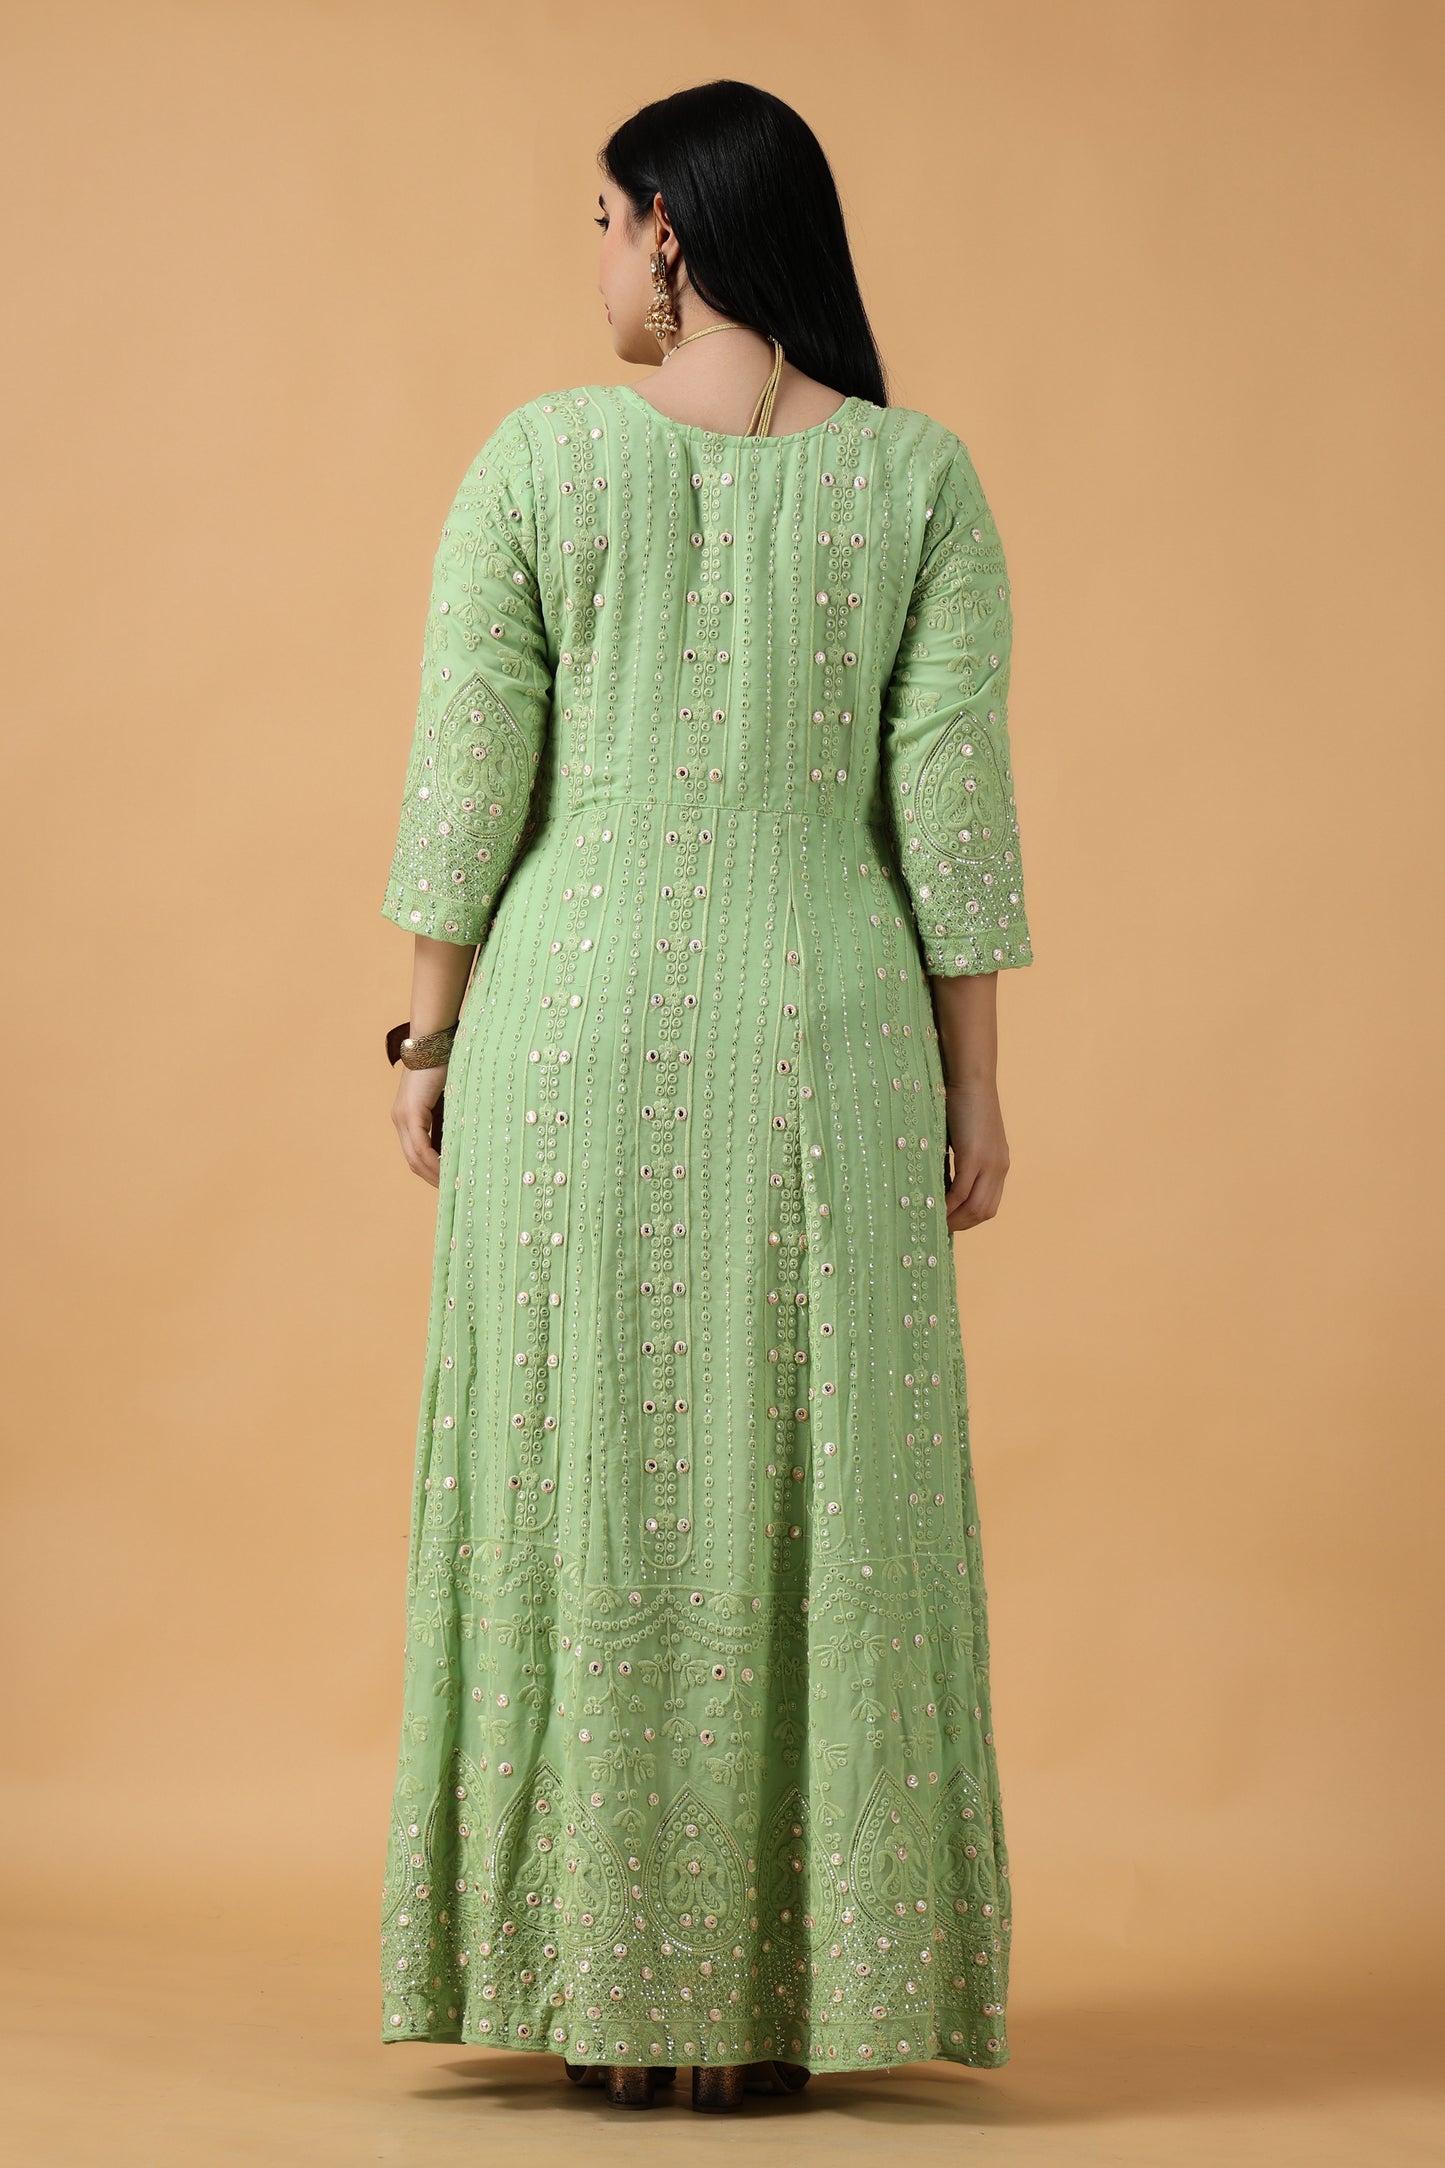 Women Plus Size Green Party Wear wedding anarkali dress | Apella